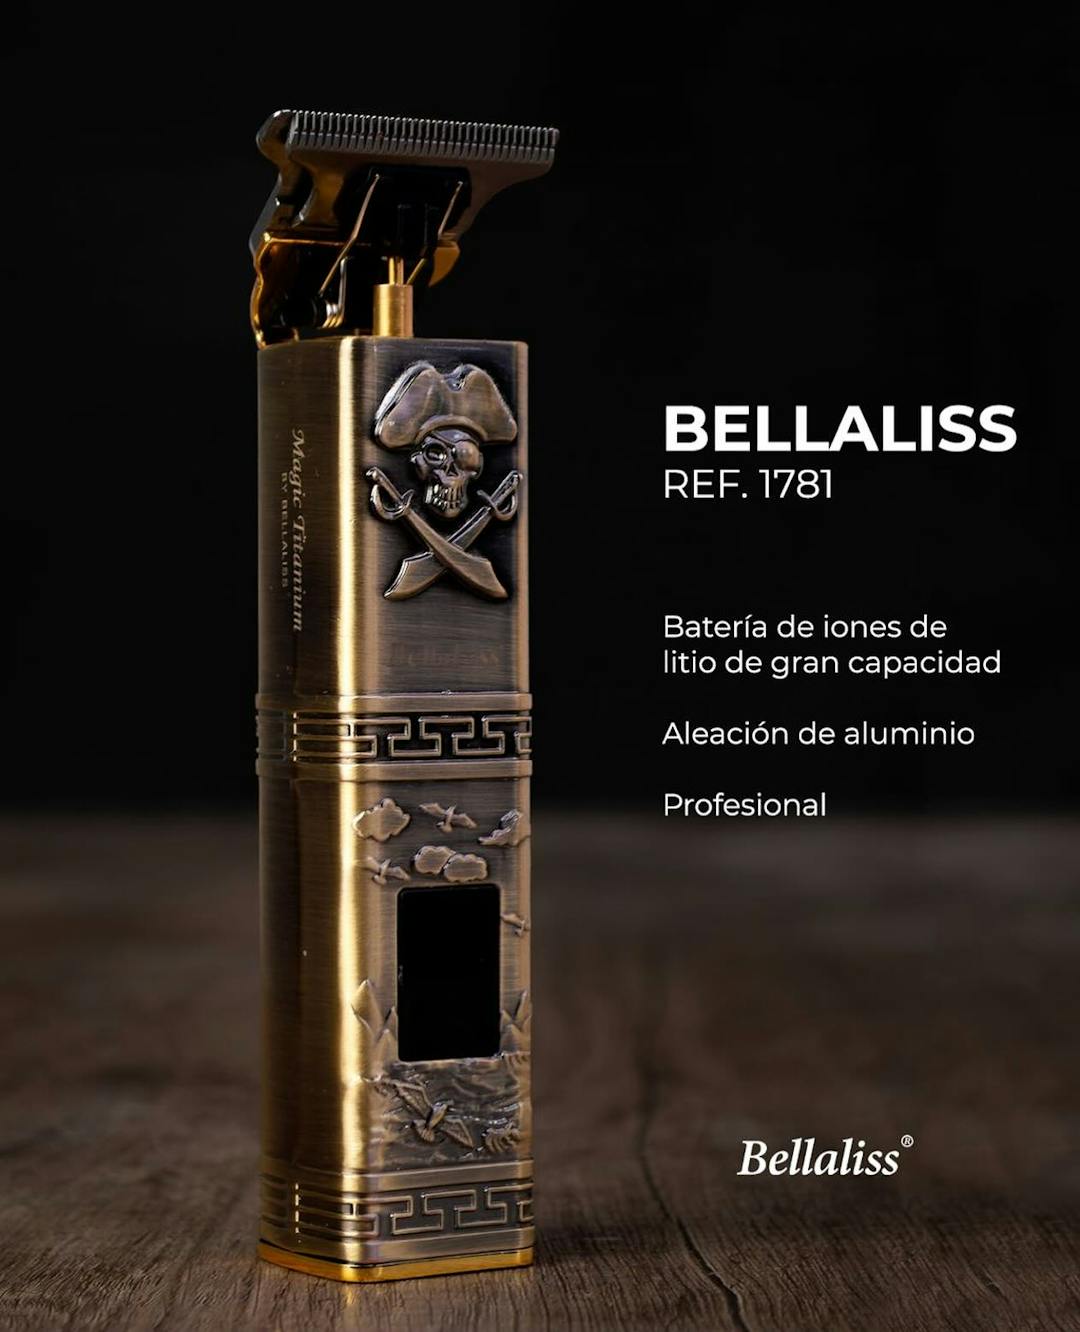 Imagen de Instagram referente a la empresa Bellalis